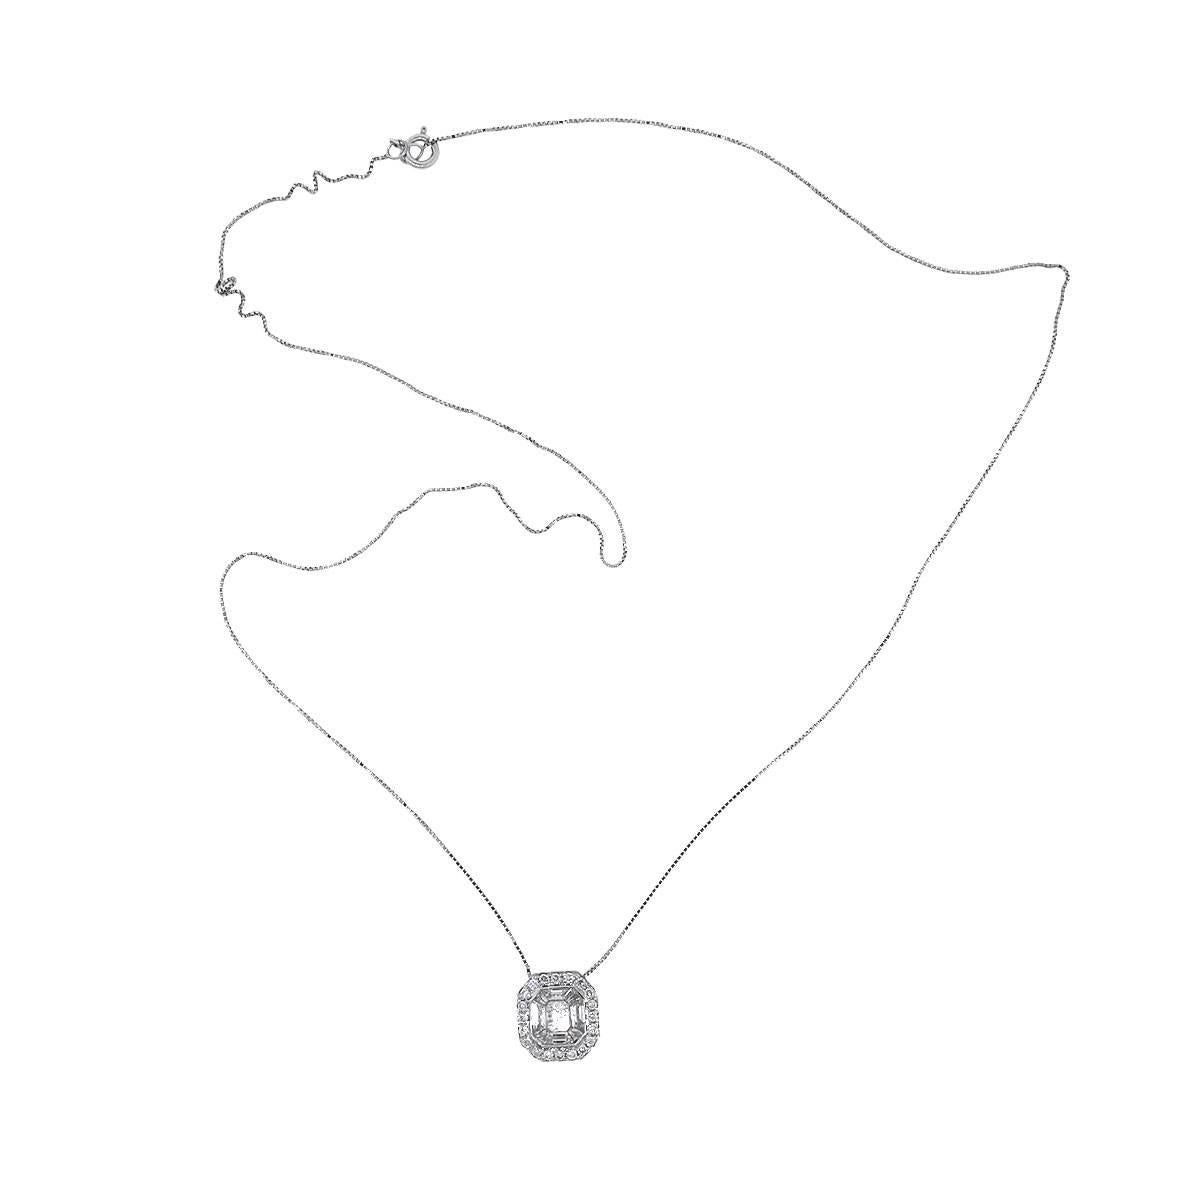 Baguette Cut Diamond Illusion Pendant on Chain Necklace